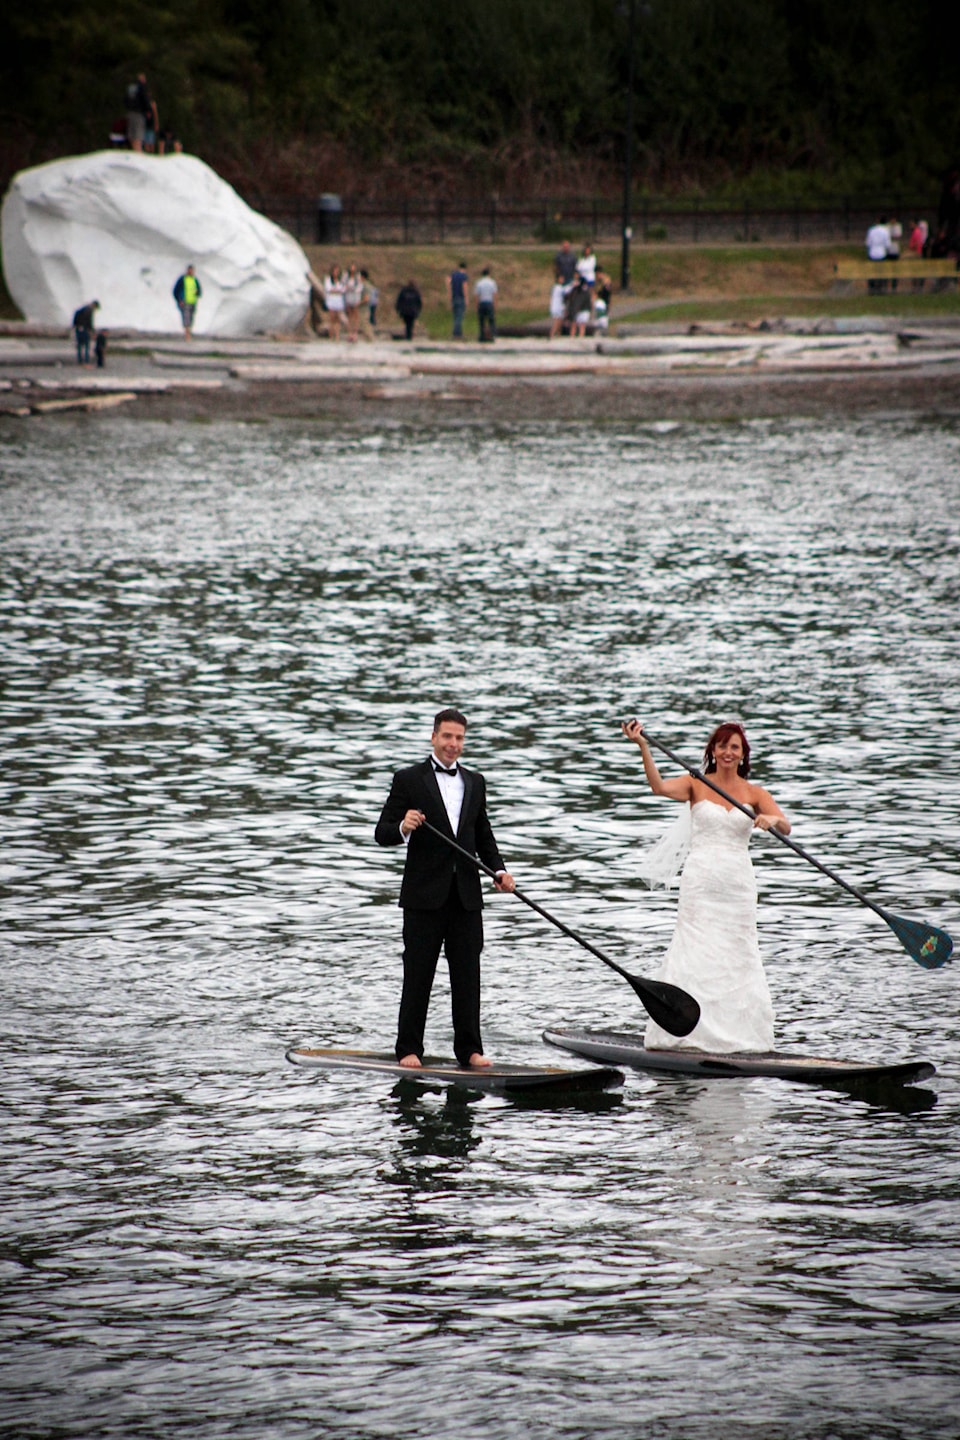 8110117_web1_Wedding-Paddleboard--28-of-50-